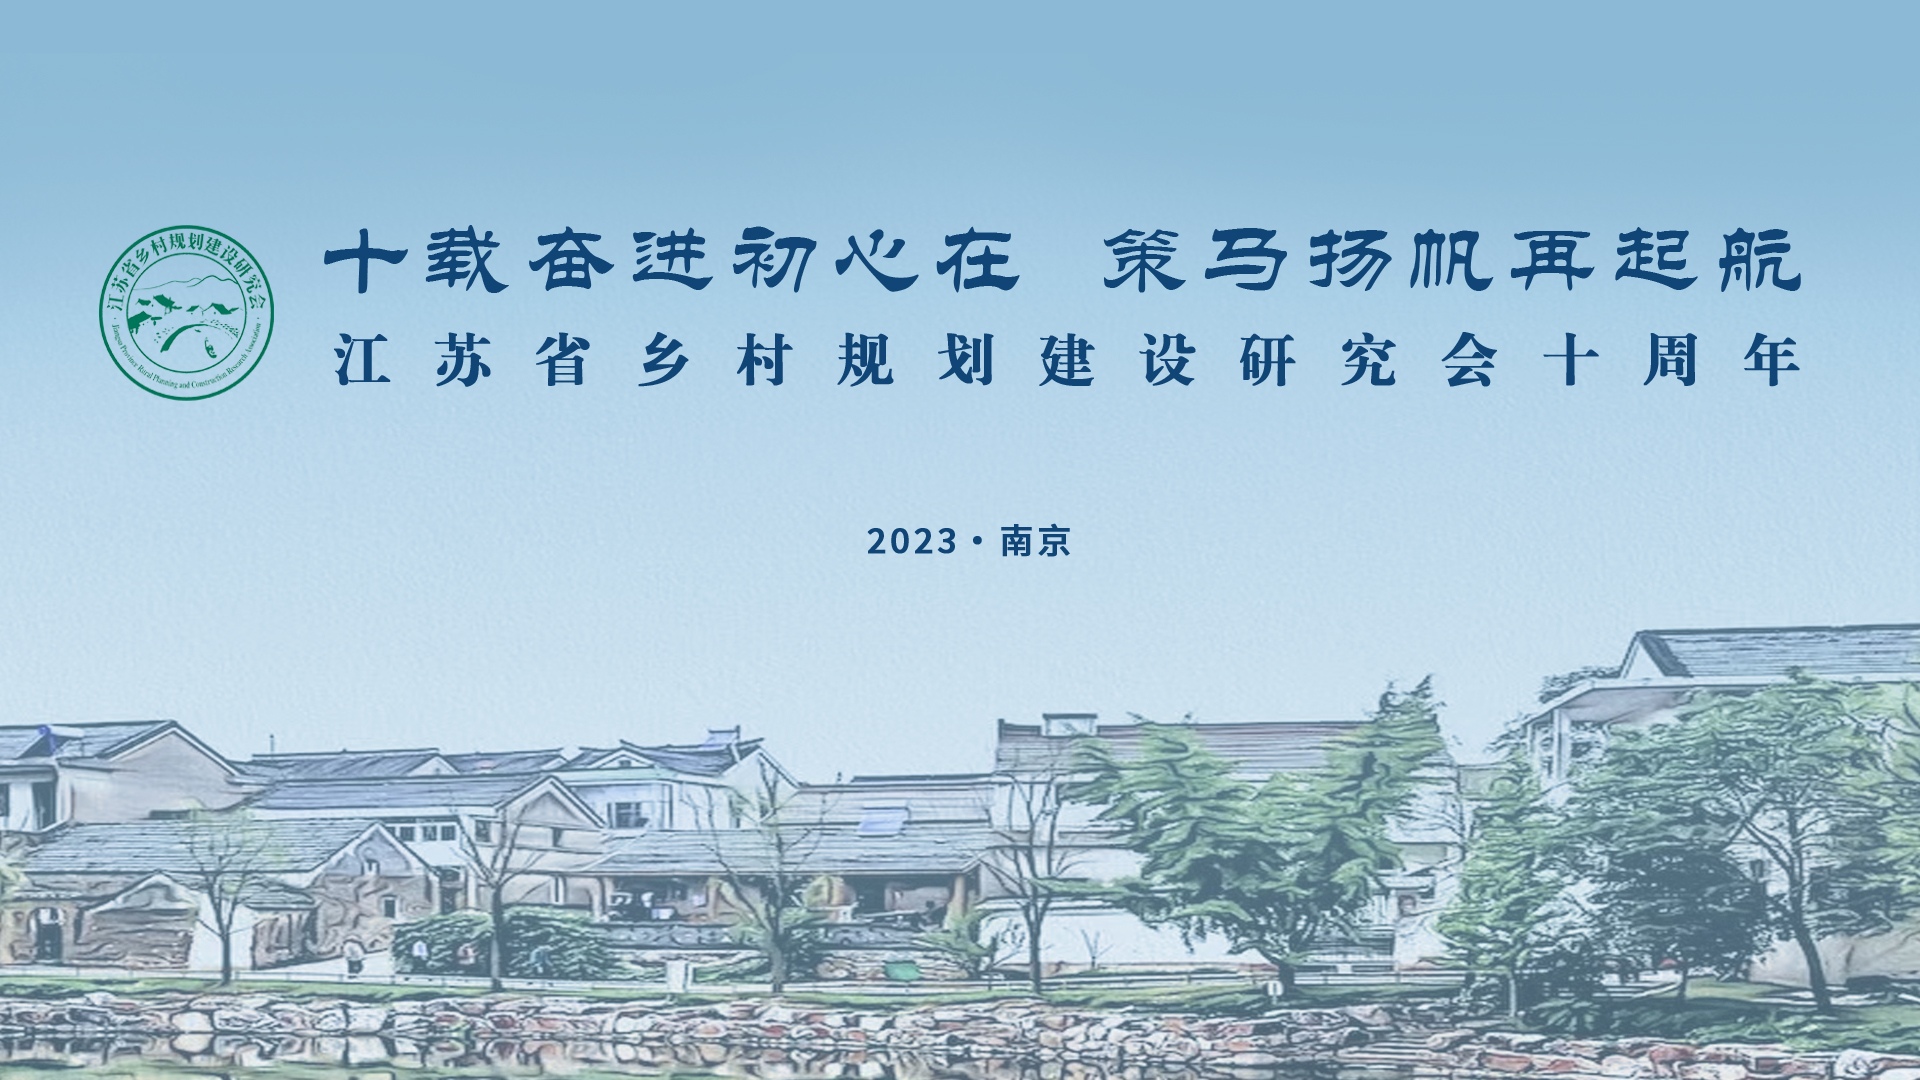 十载奋进初心在 策马扬帆再起航——江苏省乡村规划建设研究会成立十周年